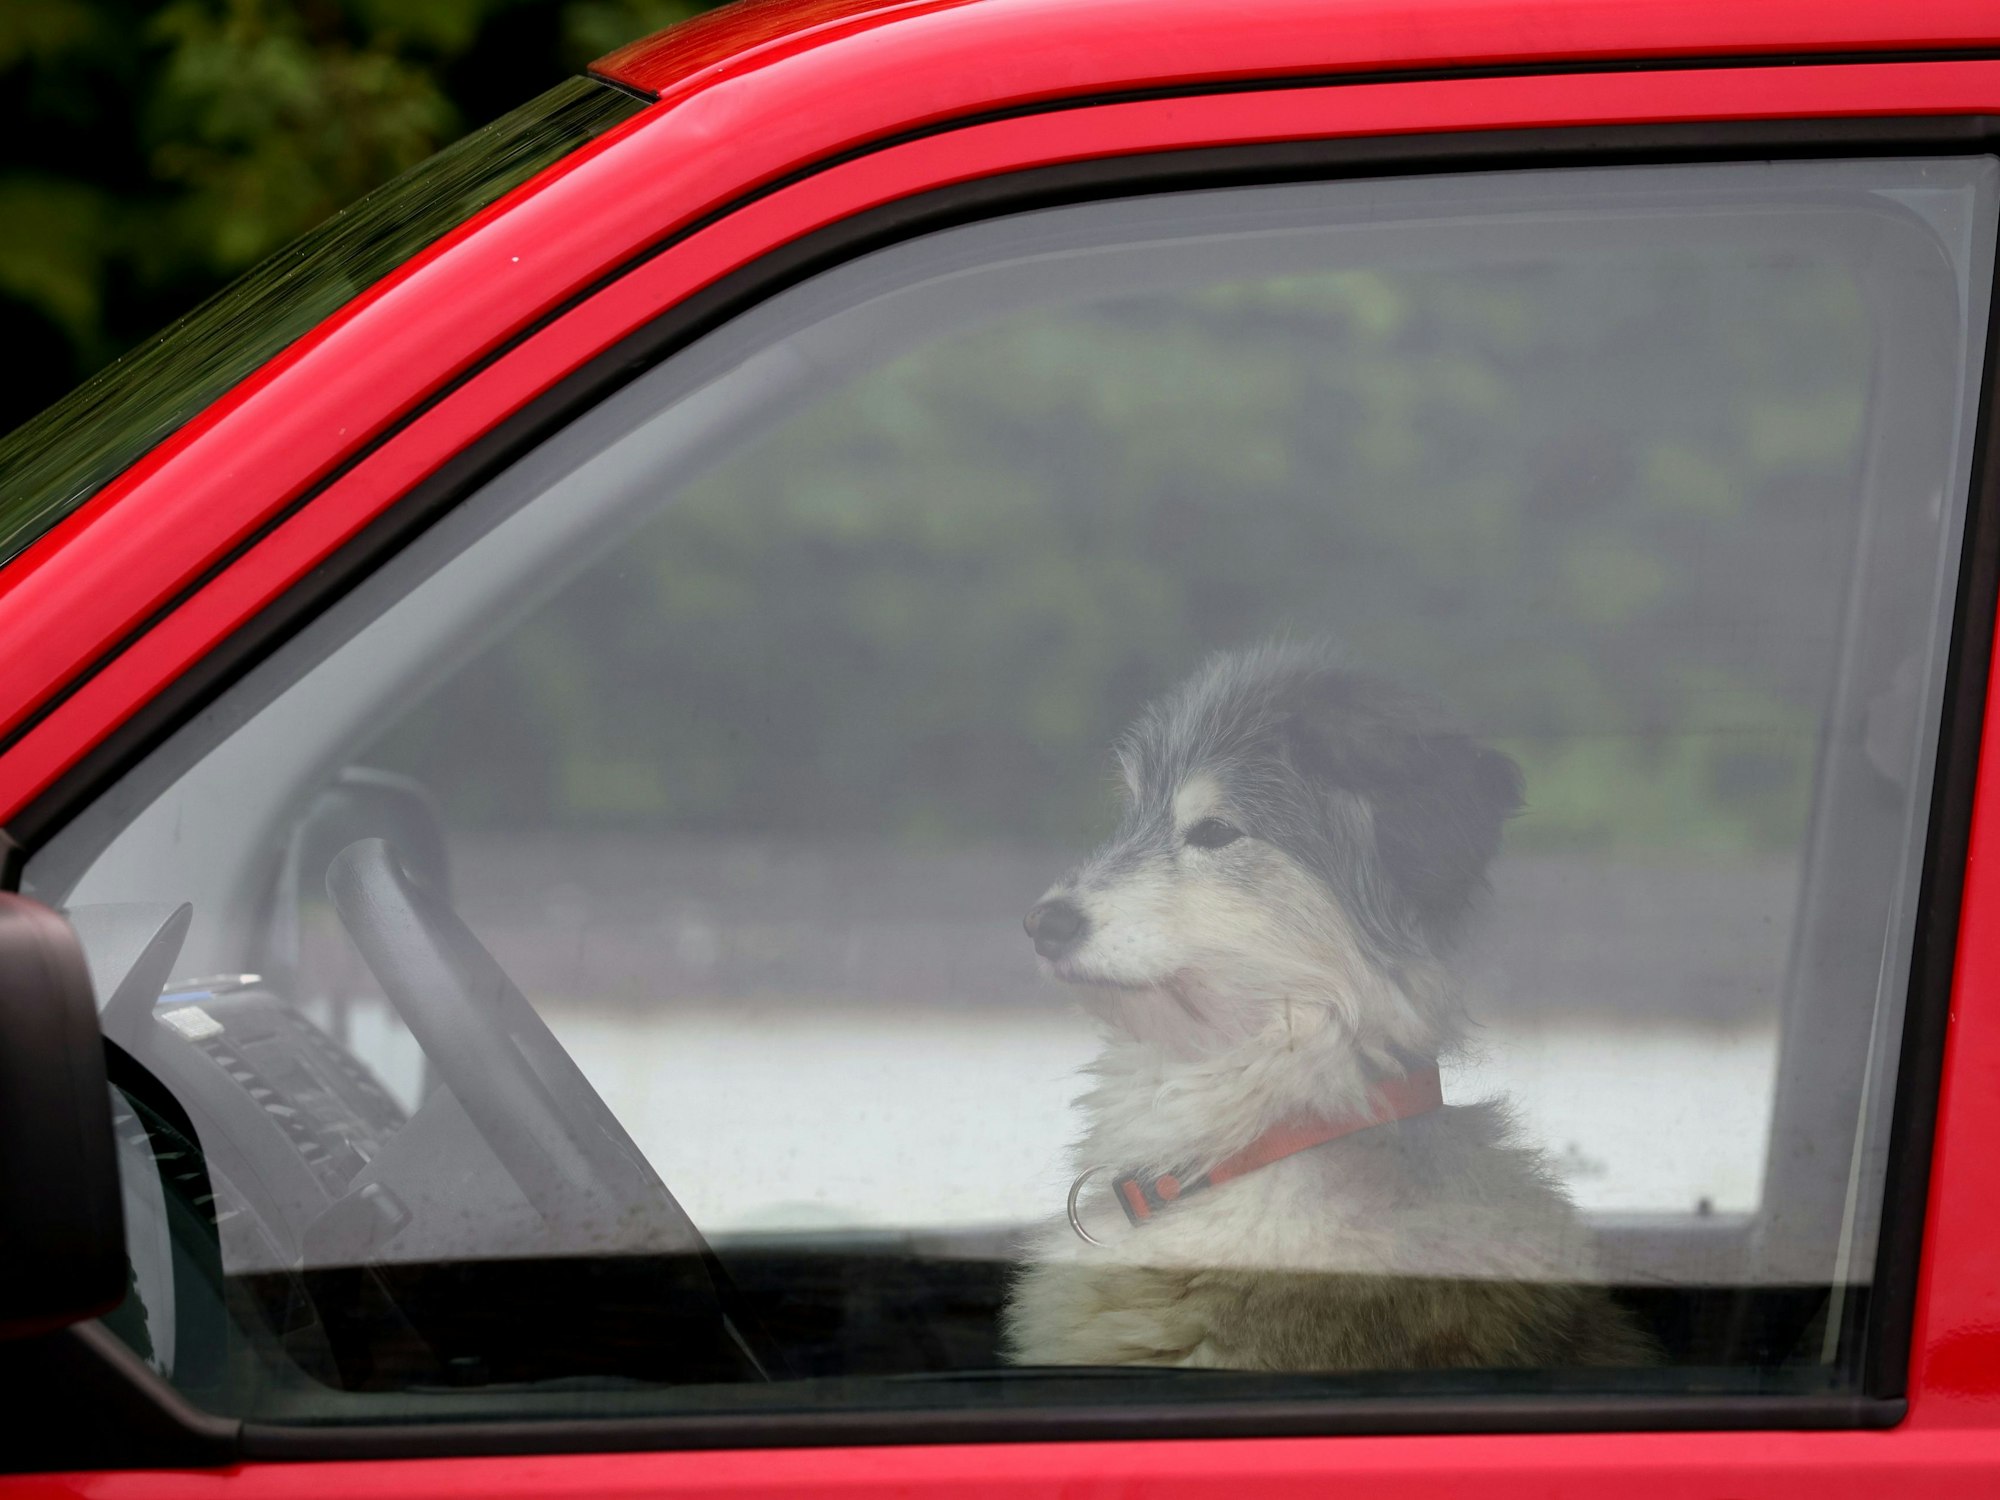 Samstag, 13. Mai 2023: Ob er einen Führerschein hat? Ein Hund wartet am Steuer eines VW-Busses im bayrischen Utting auf sein Herrchen.